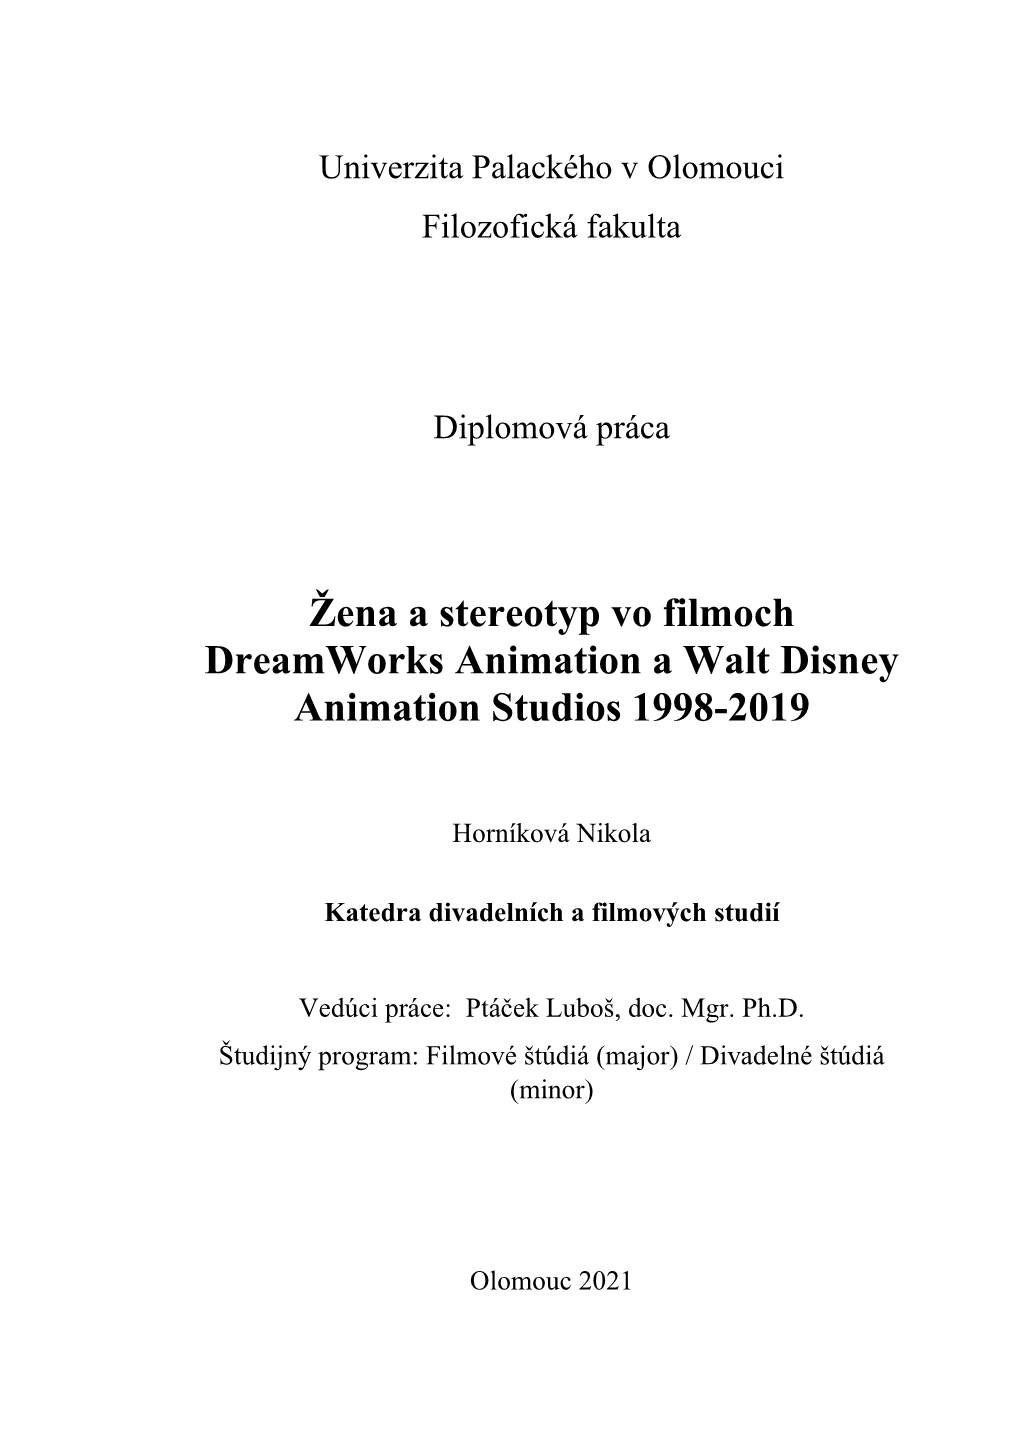 Žena a Stereotyp Vo Filmoch Dreamworks Animation a Walt Disney Animation Studios 1998-2019